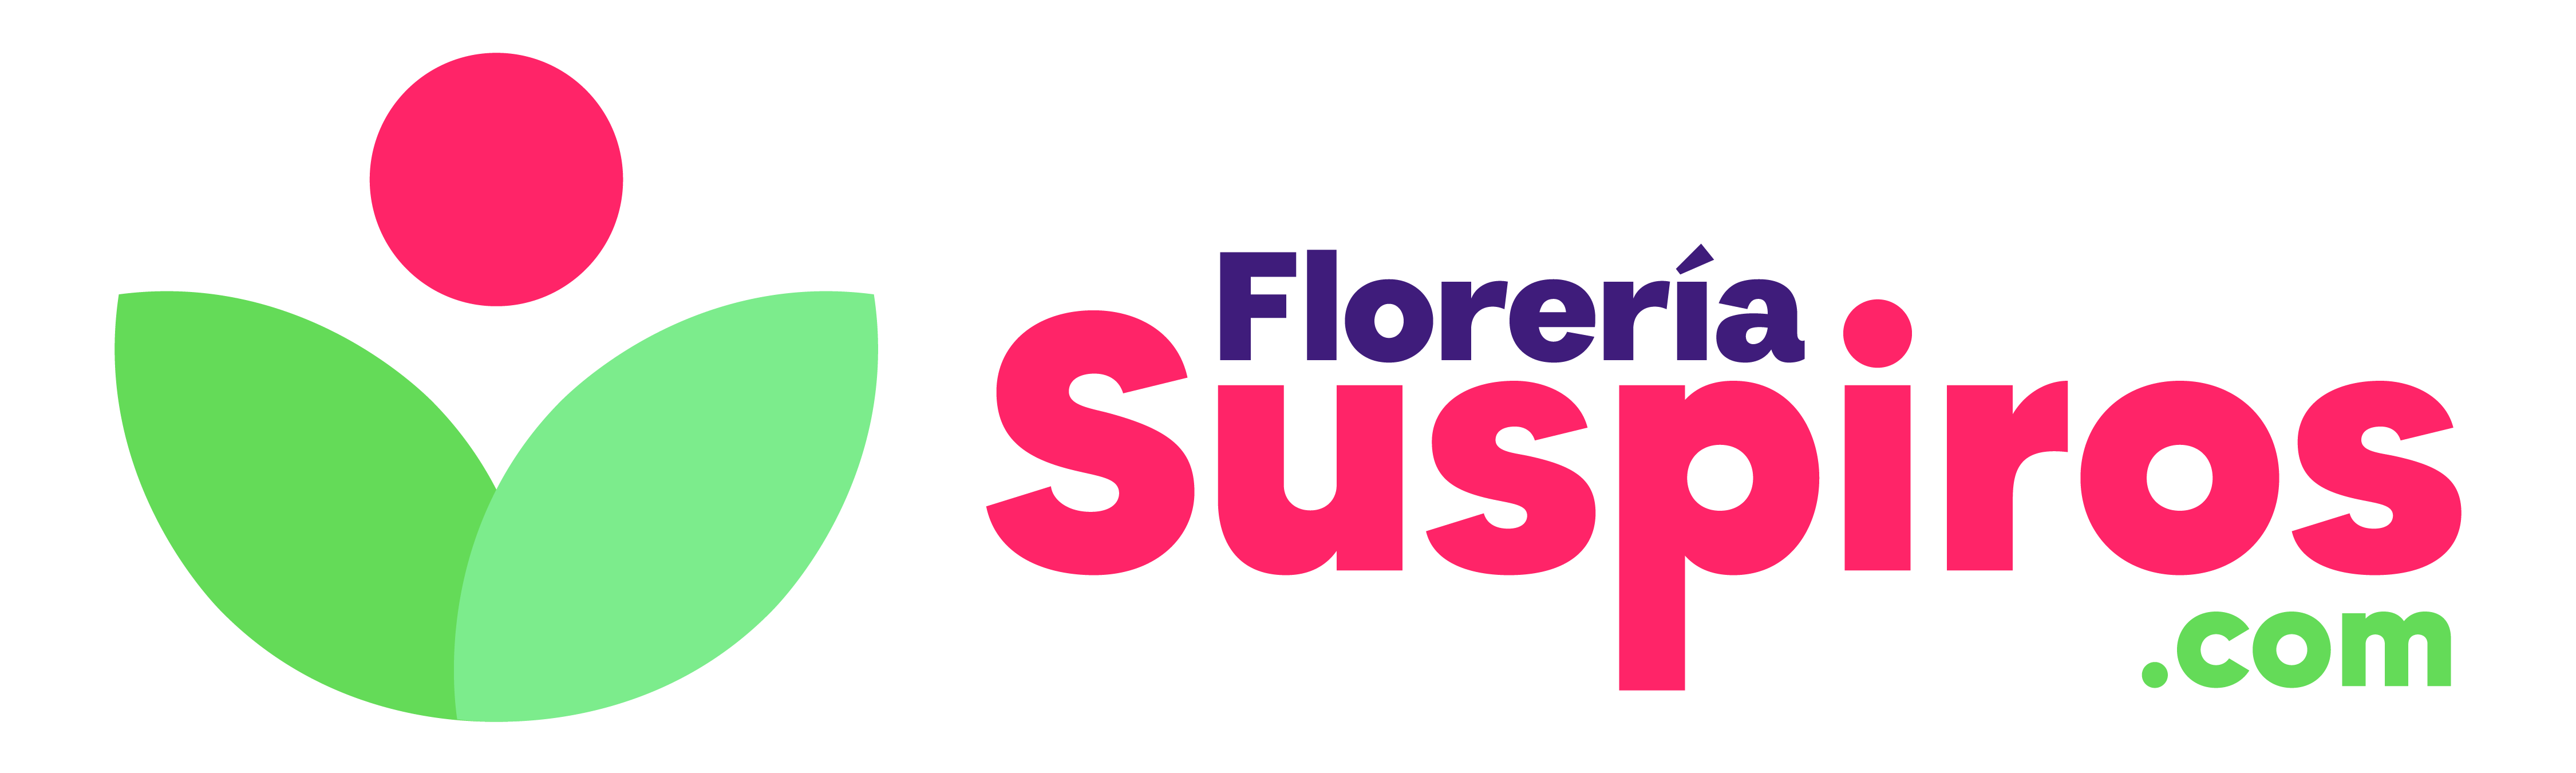 Florería Suspiros - Envío de Flores a Domicilio